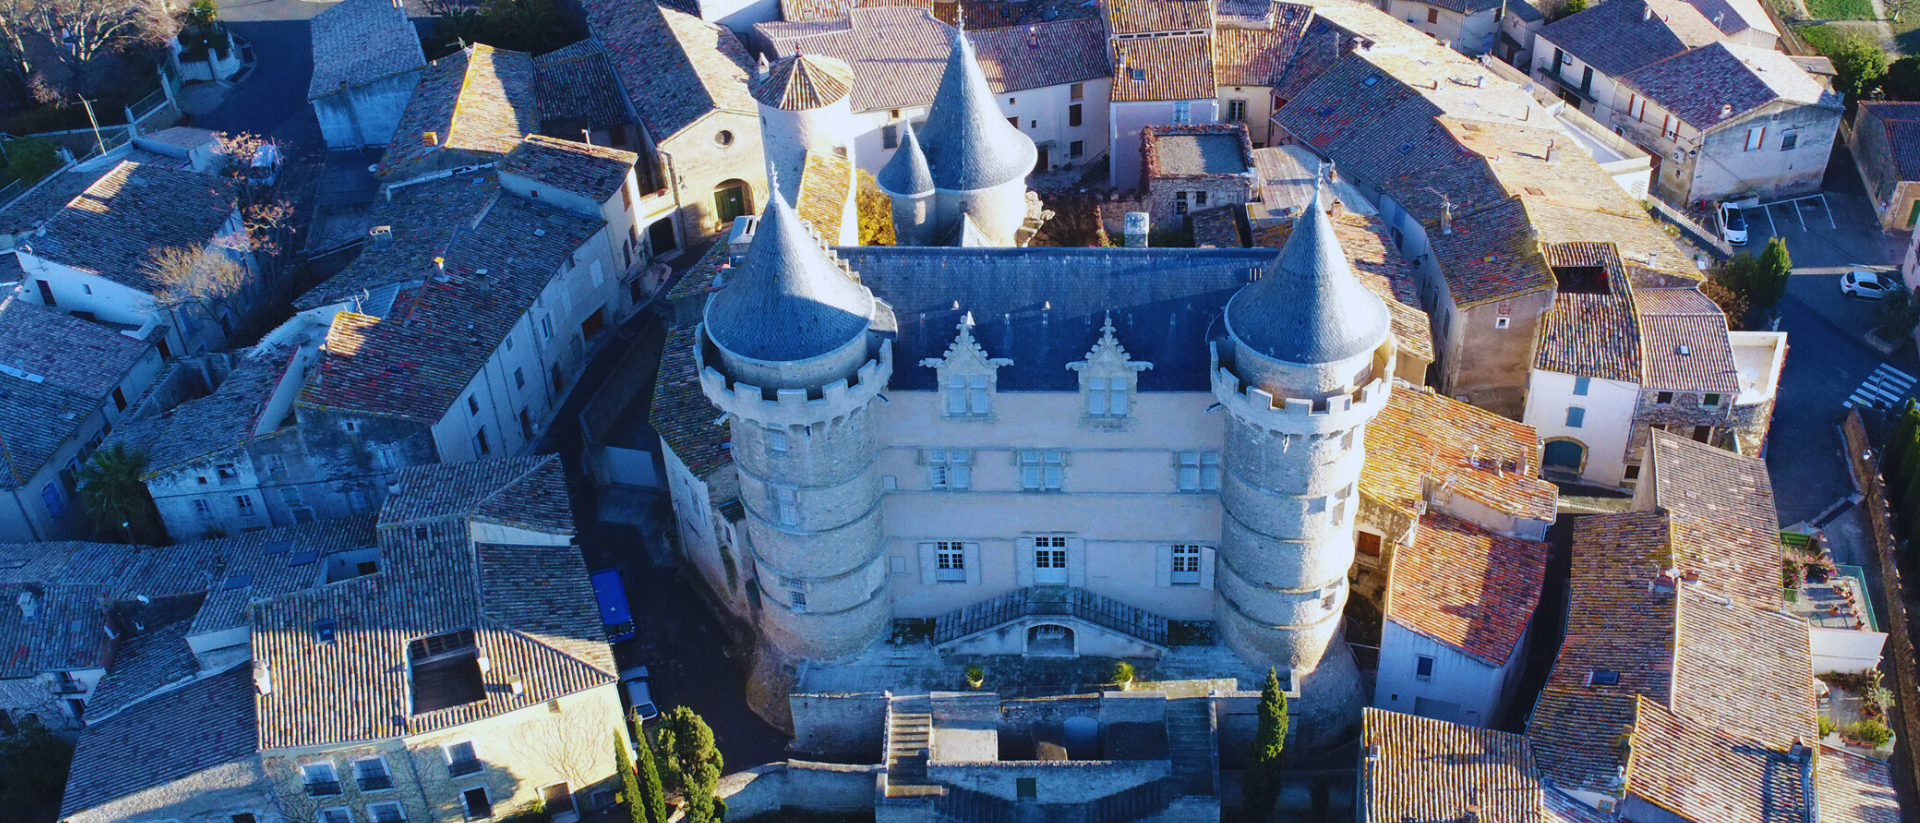 Château de Margon